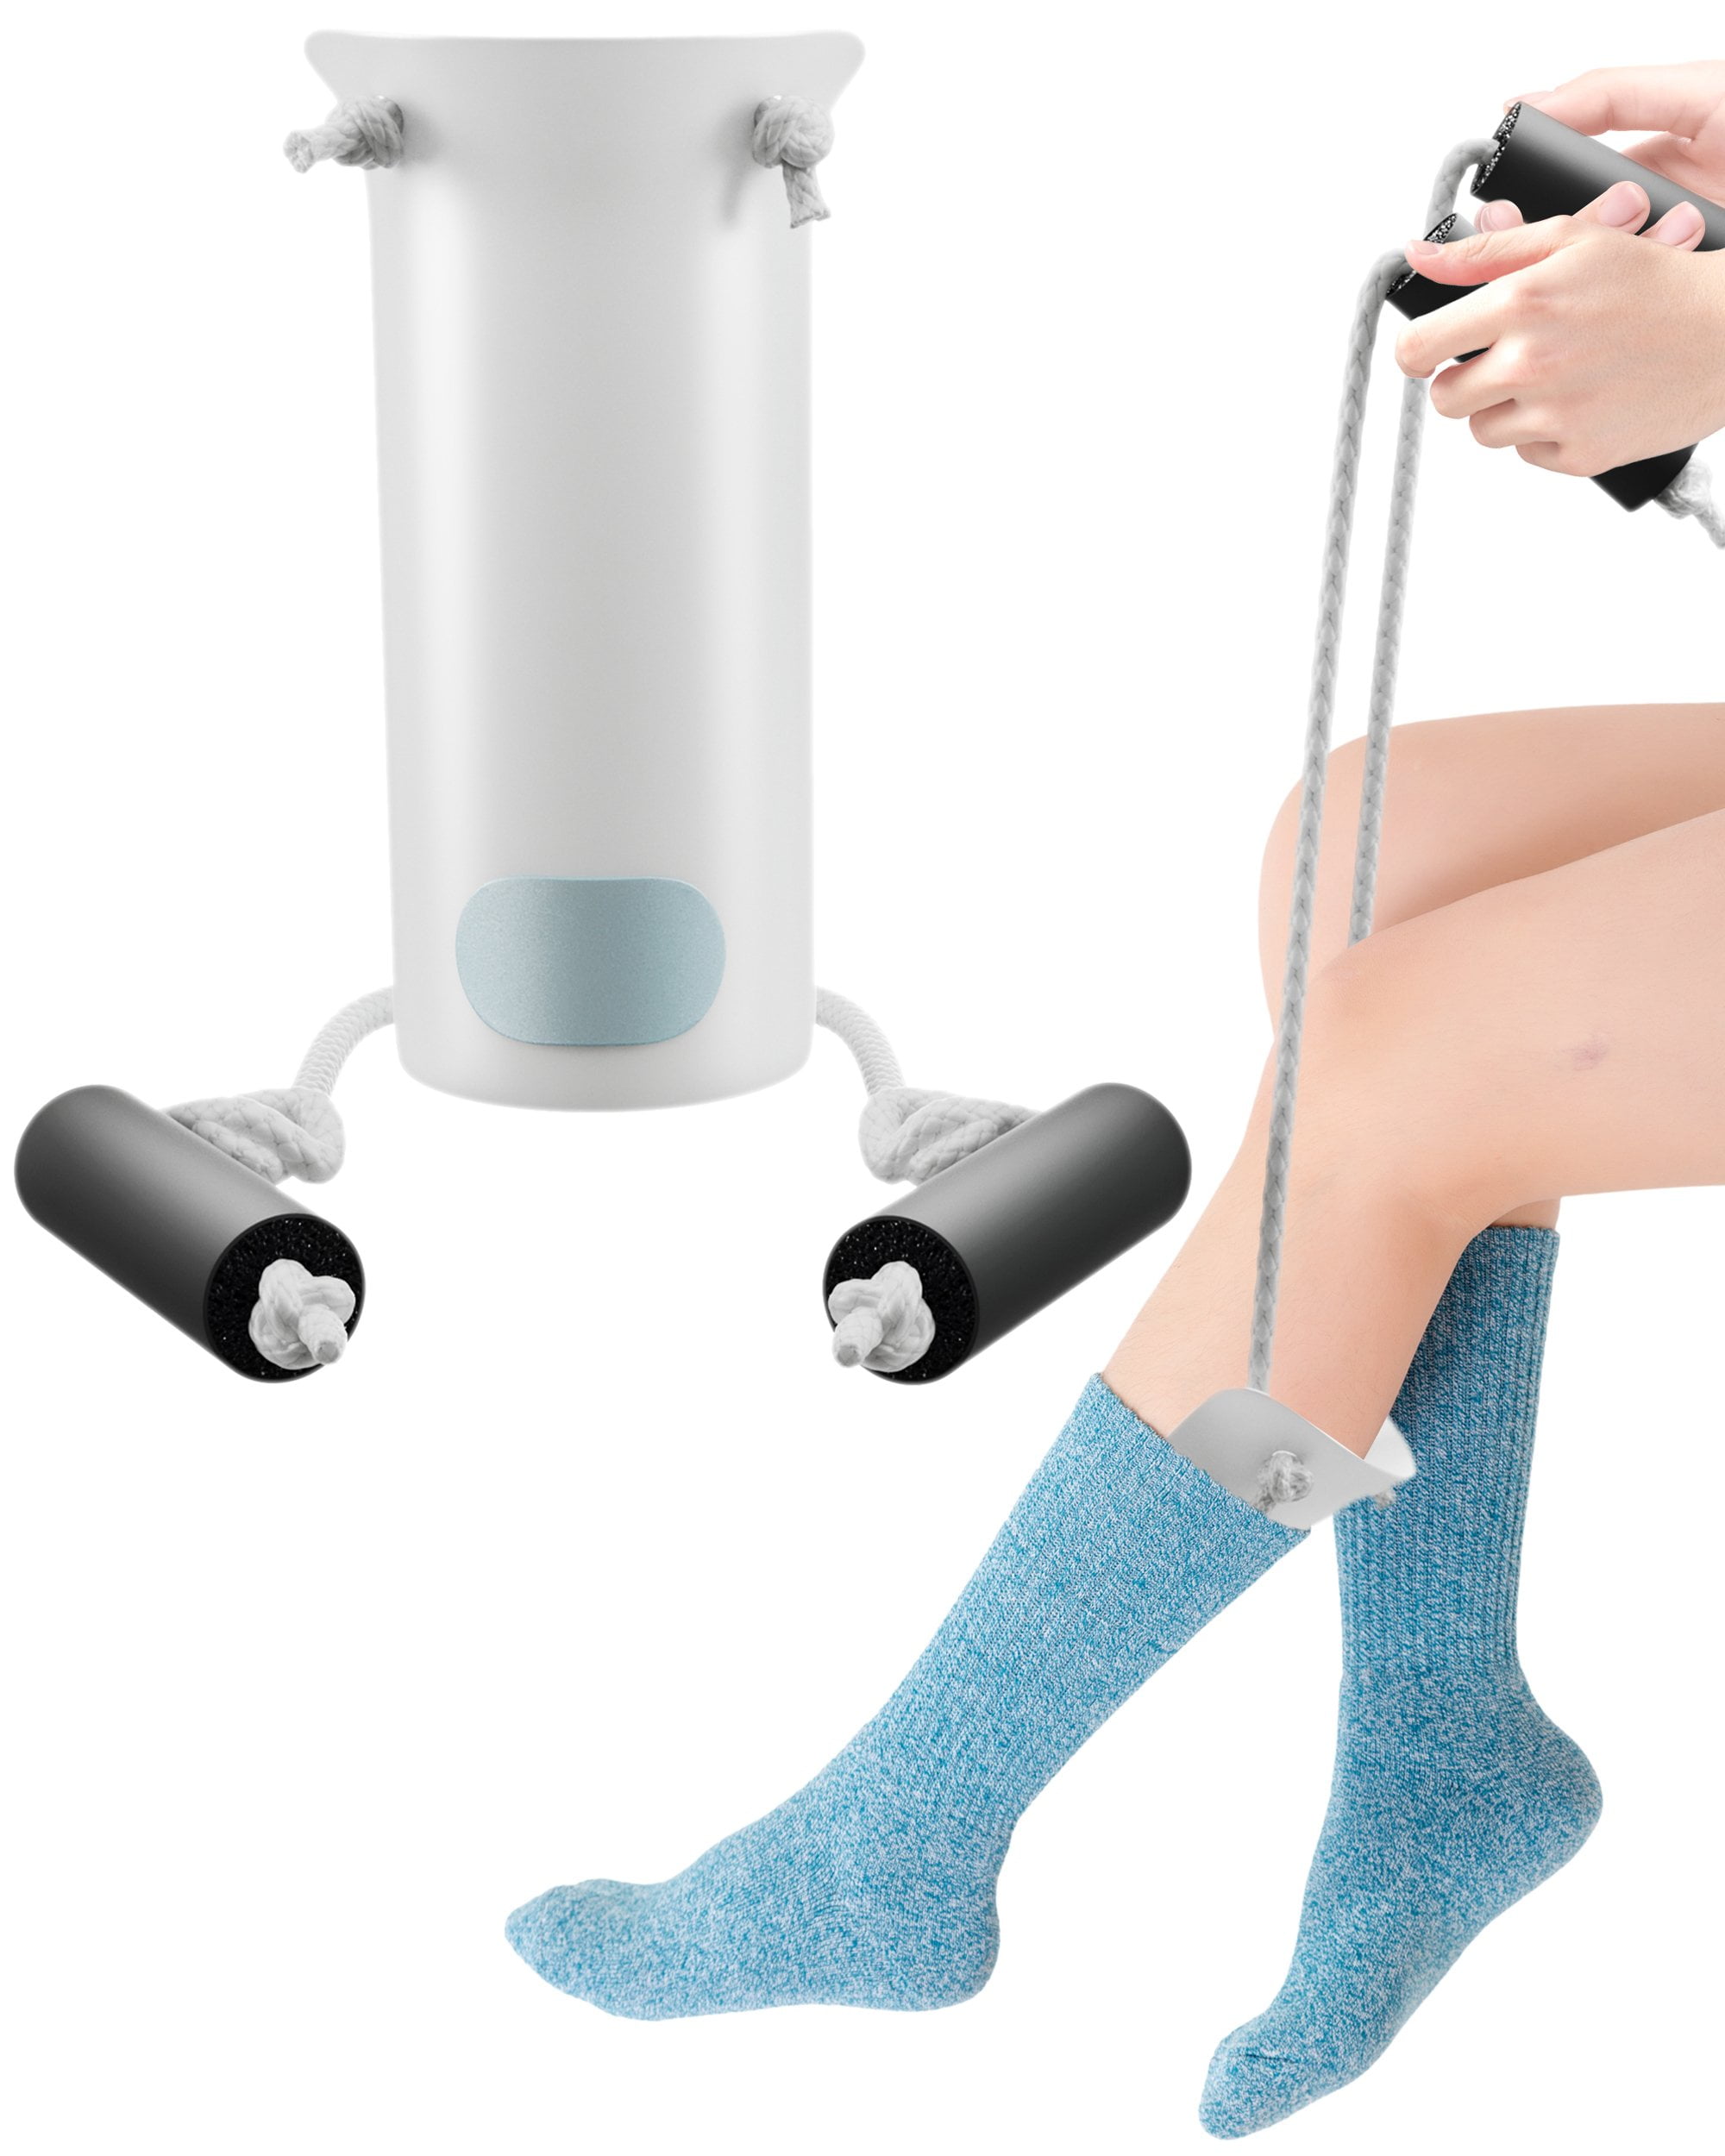 Deluxe Molded Sock Aid Donner - Foam Grip Handles - 31